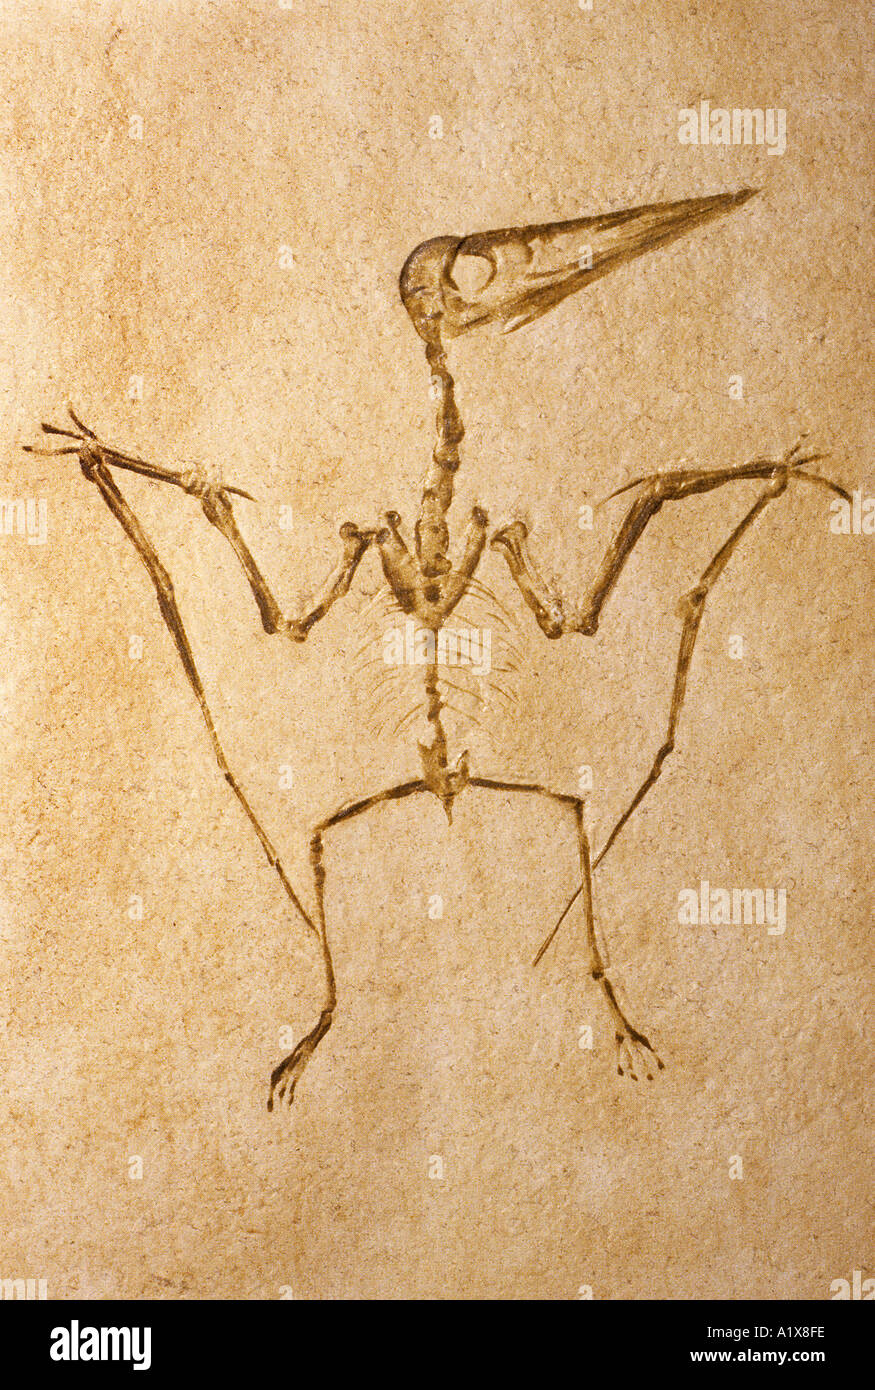 Flugsaurier Pretodactylus Spectabilis fossilen Oberjura aus dem Westen Deutschlands Stockfoto